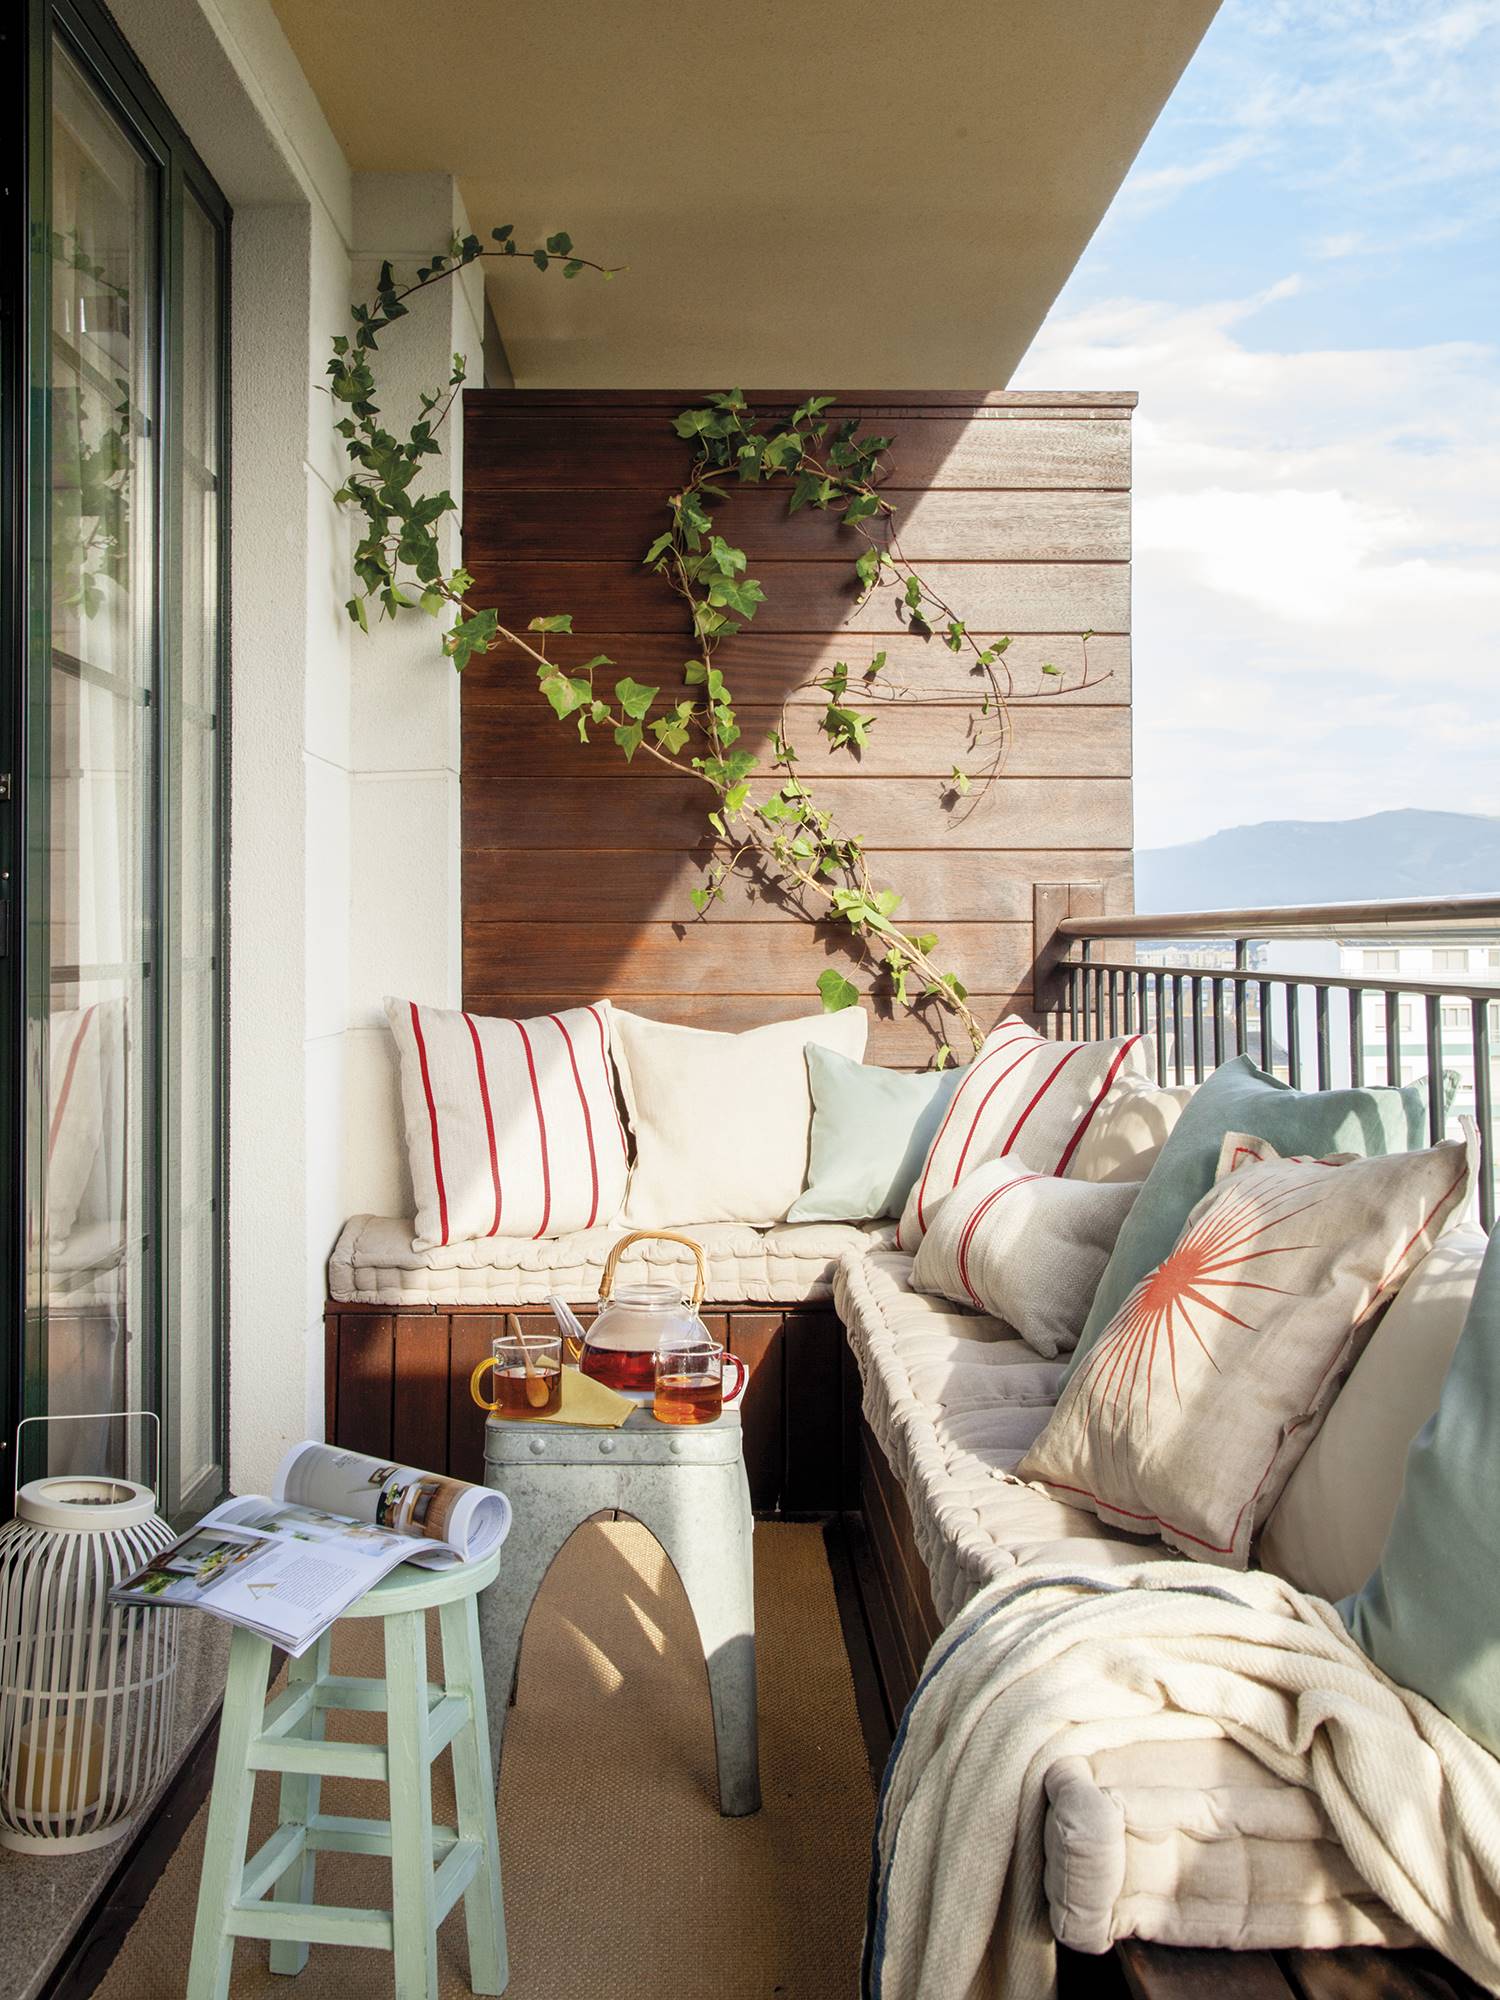 Terraza con banco a medida en L de madera decorado con cojines en tonos beige y azulados y dos mesas auxiliares sobre una alfombra de fibras